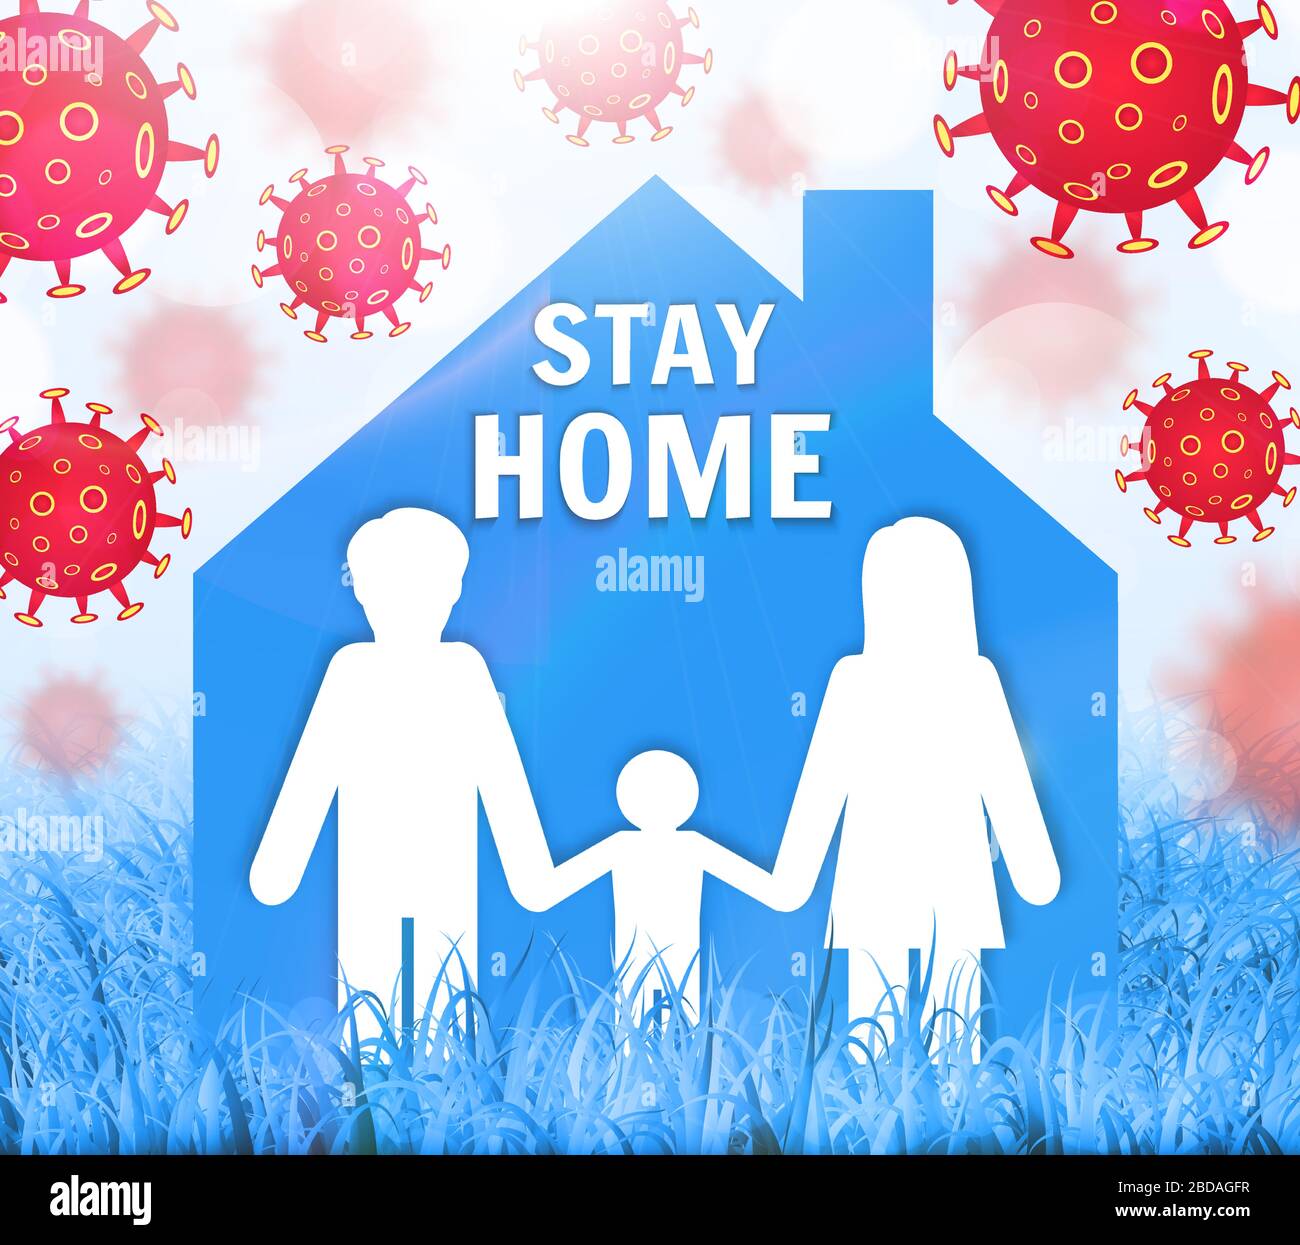 Rimani al sicuro, rimani a casa. Salvare il pianeta dal coronavirus COVID-19. Precauzioni di quarantena per rimanere al sicuro. Illustrazione vettoriale Illustrazione Vettoriale